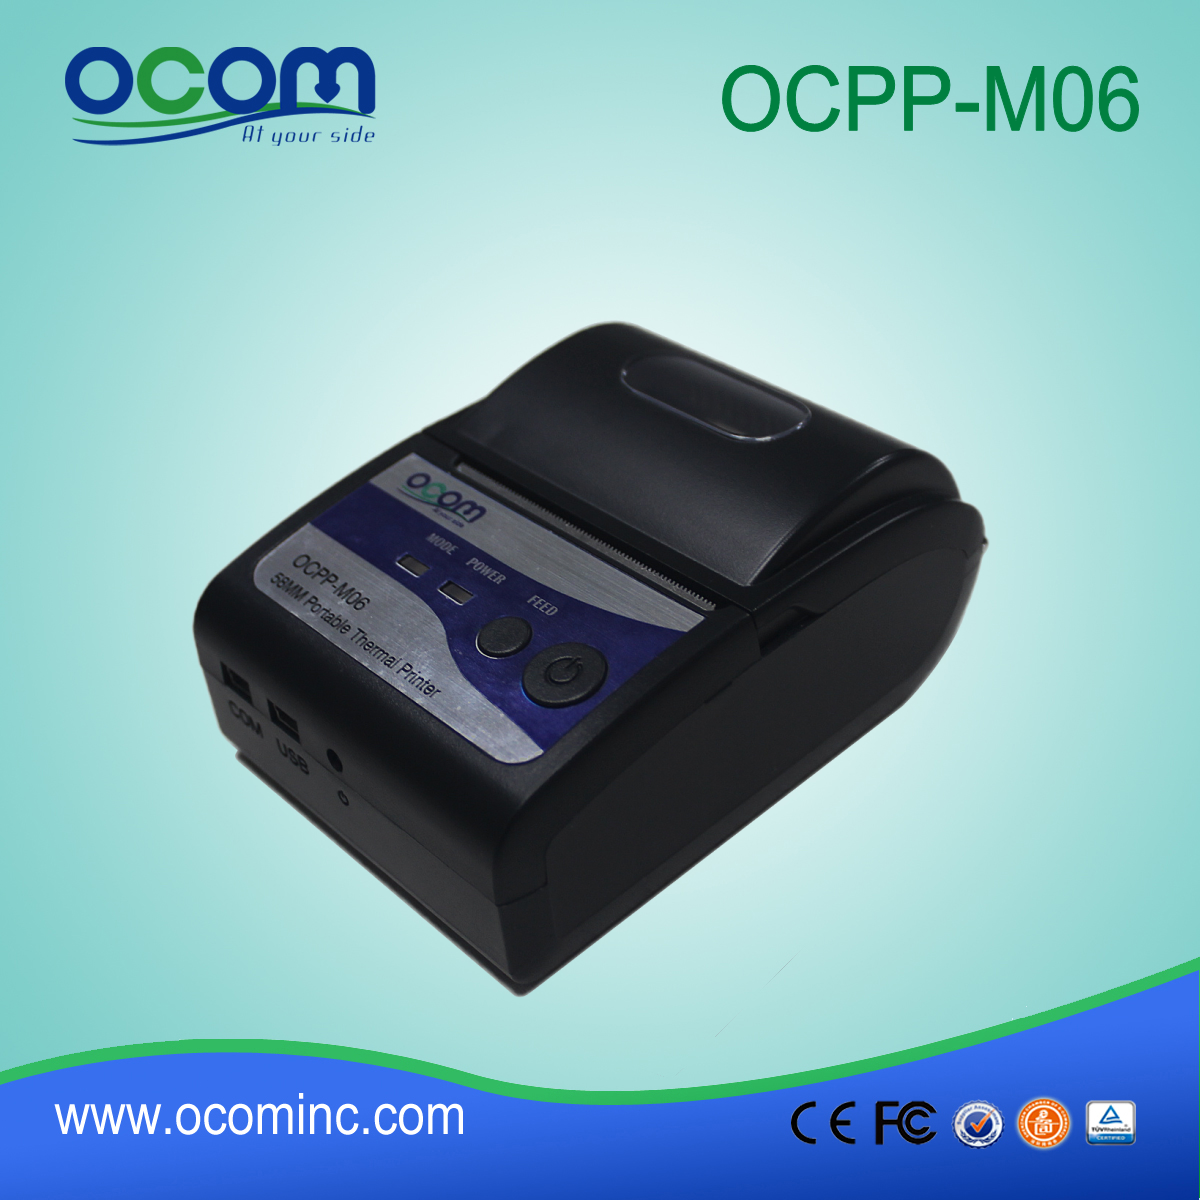 OCPP-M06: Chiny wykonane dobrej jakości OCOM 58mm pos drukarki drukarki termiczne